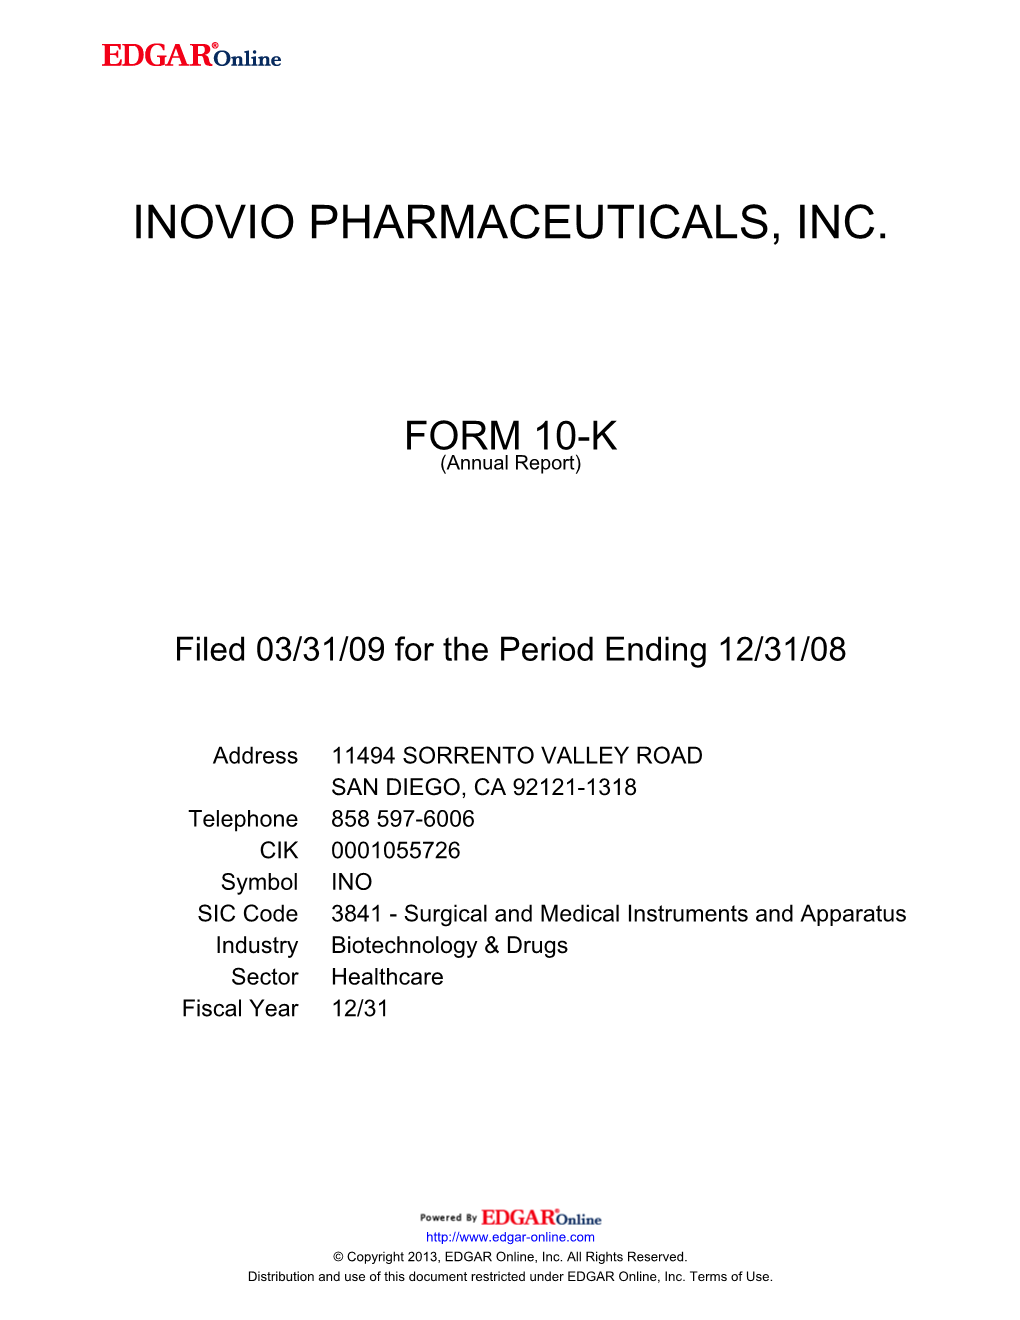 Inovio Pharmaceuticals, Inc